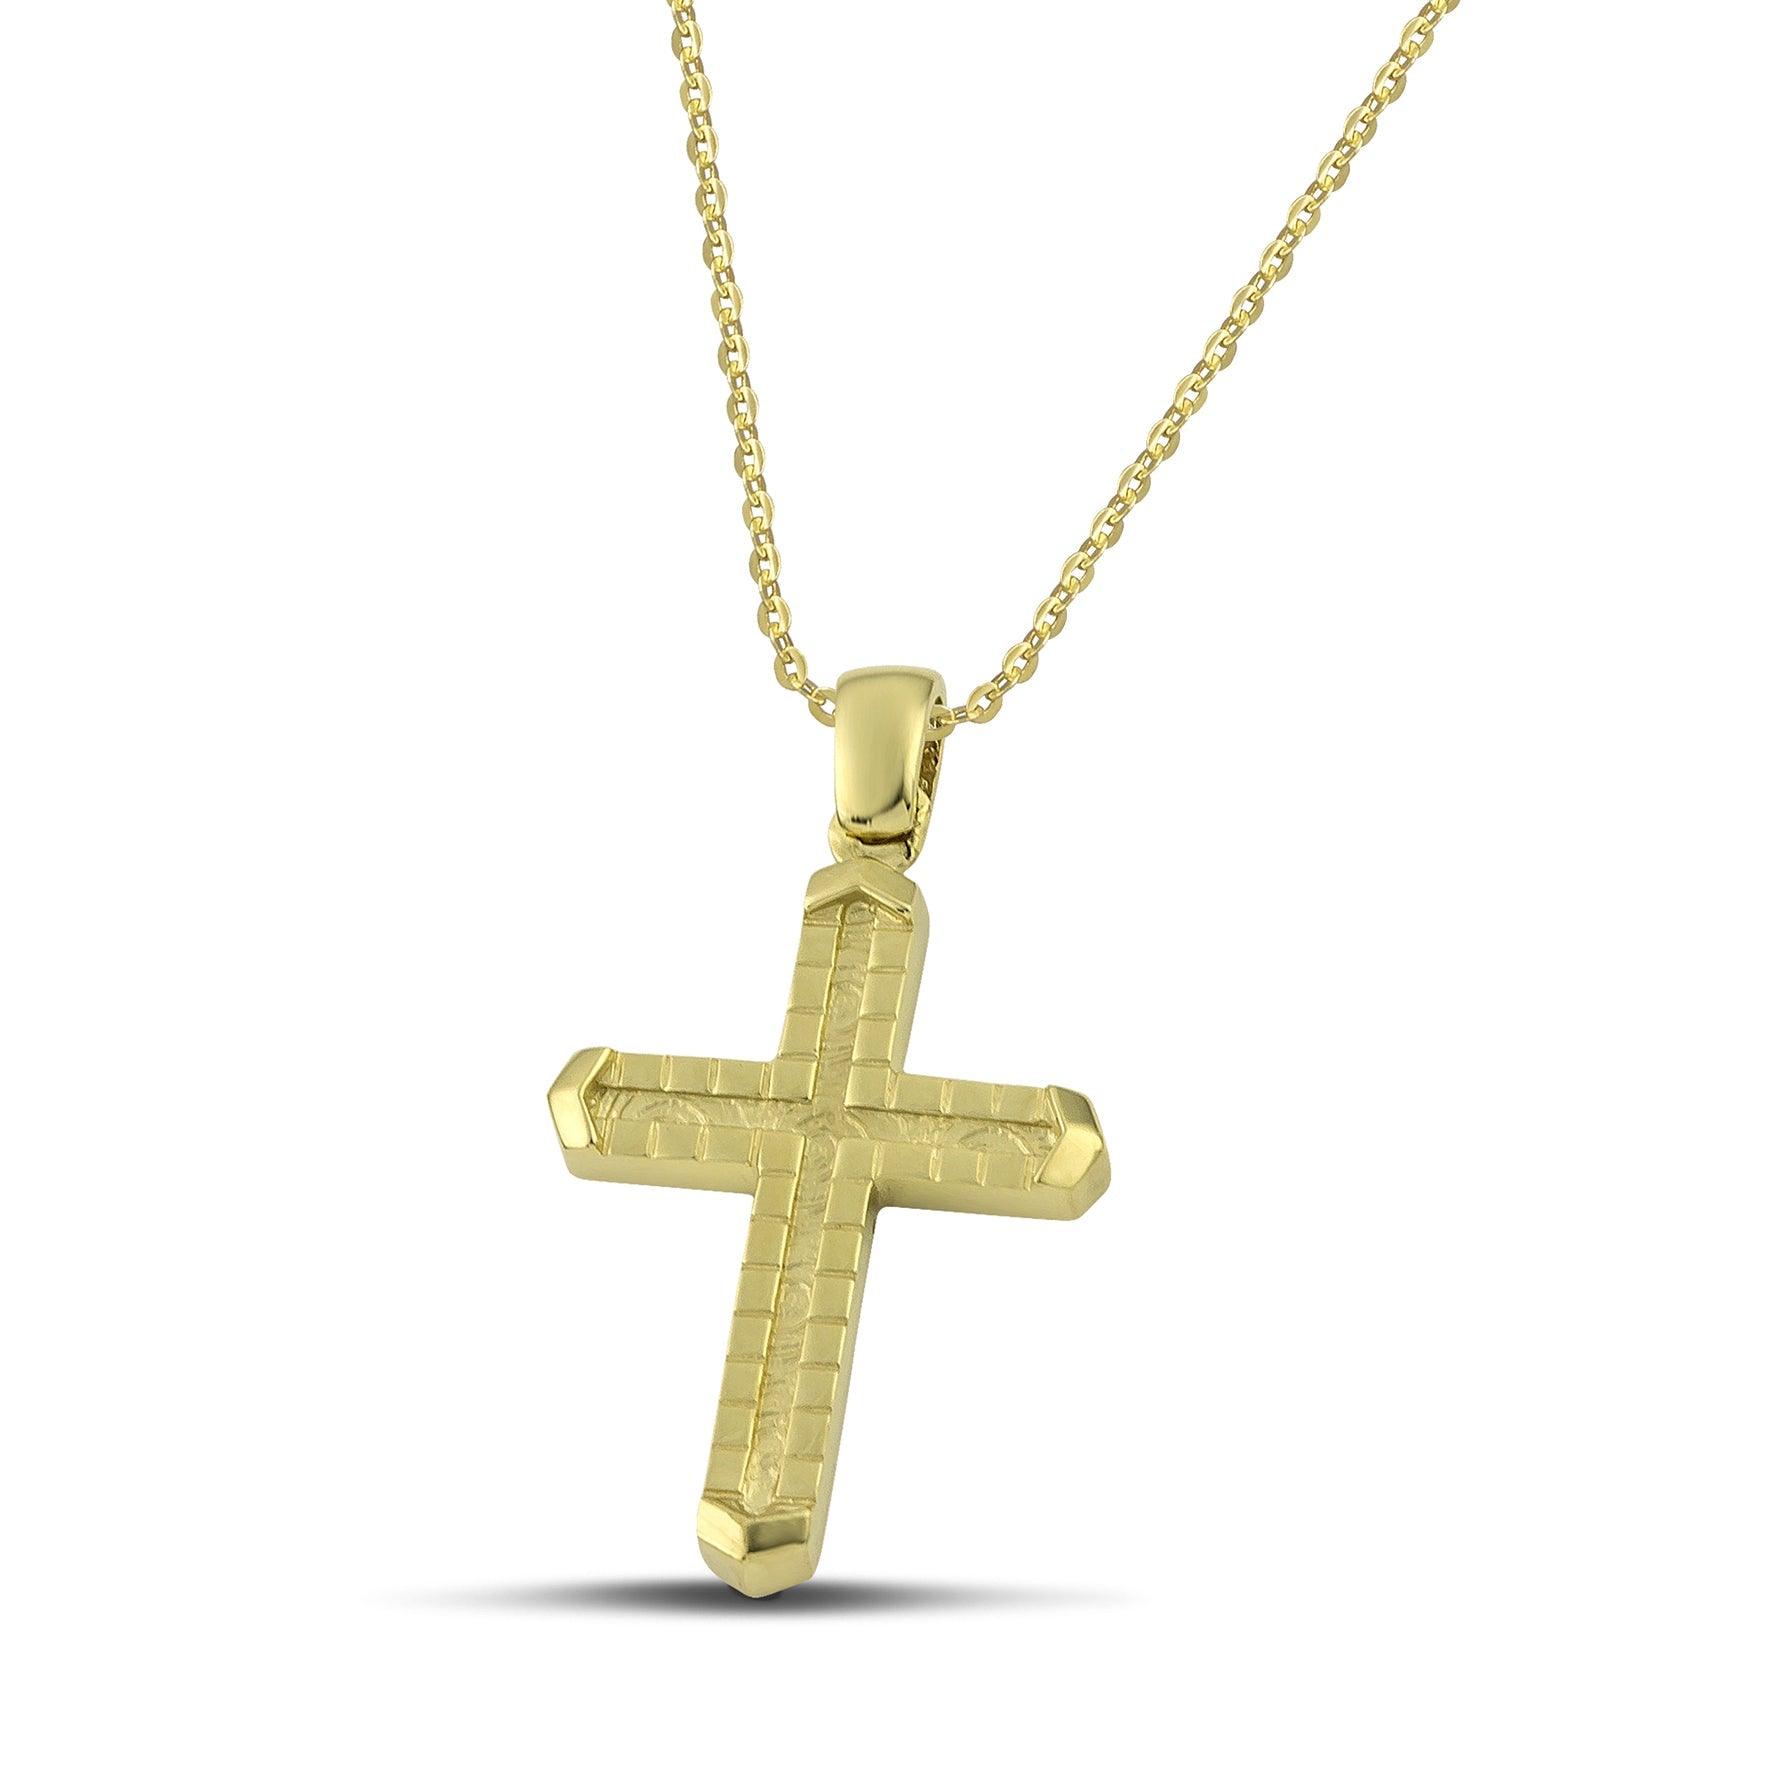 Ανδρικός σταυρός βάπτισης από χρυσό Κ14 με μοντέρνο σχέδιο και λεπτή αλυσίδα. 